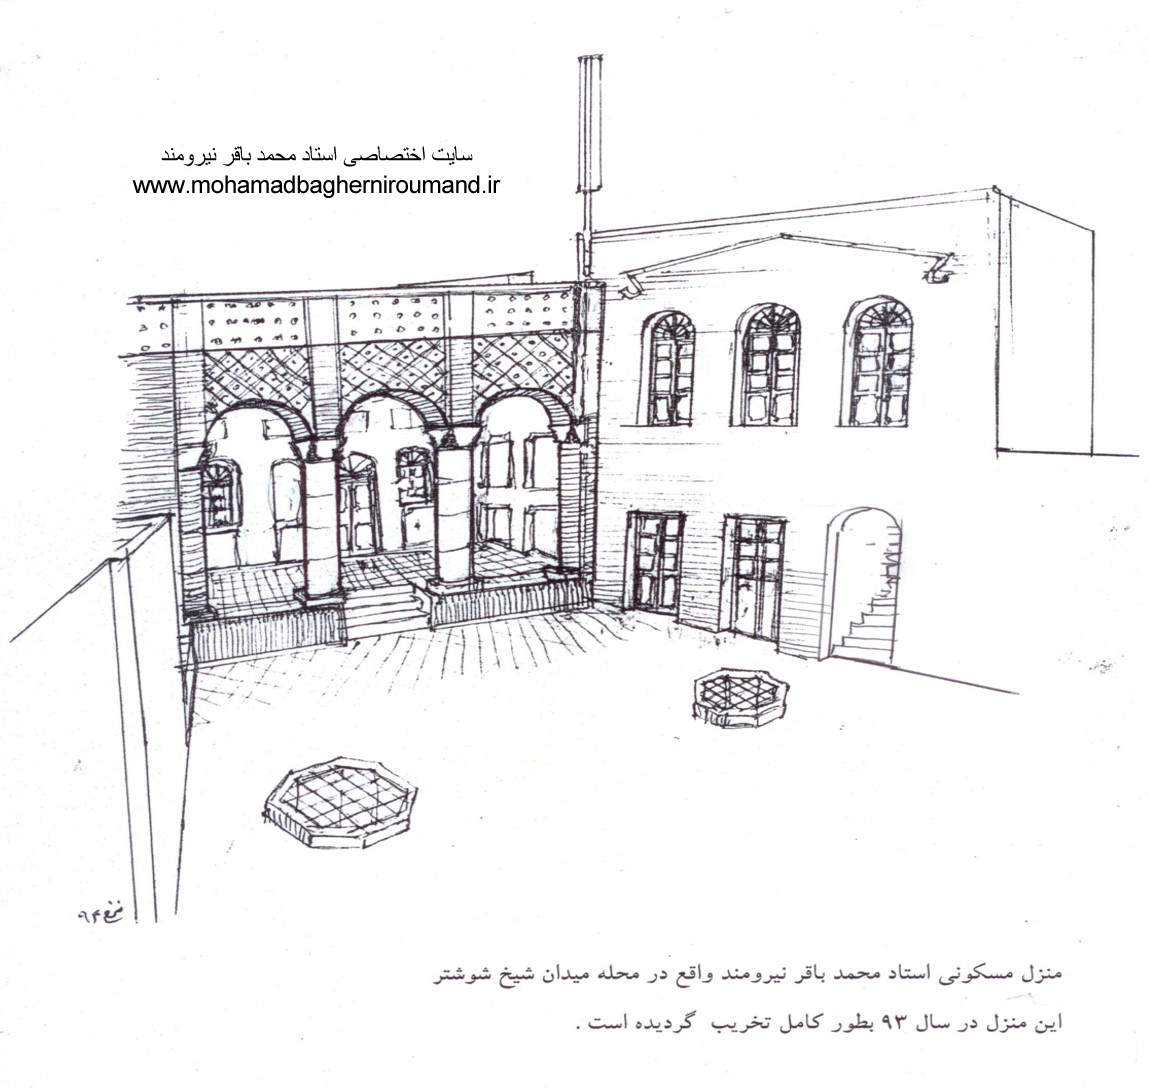 منزل مسکونی استاد محمد باقر نیرومند واقع در محله میدان شیخ شوشتر